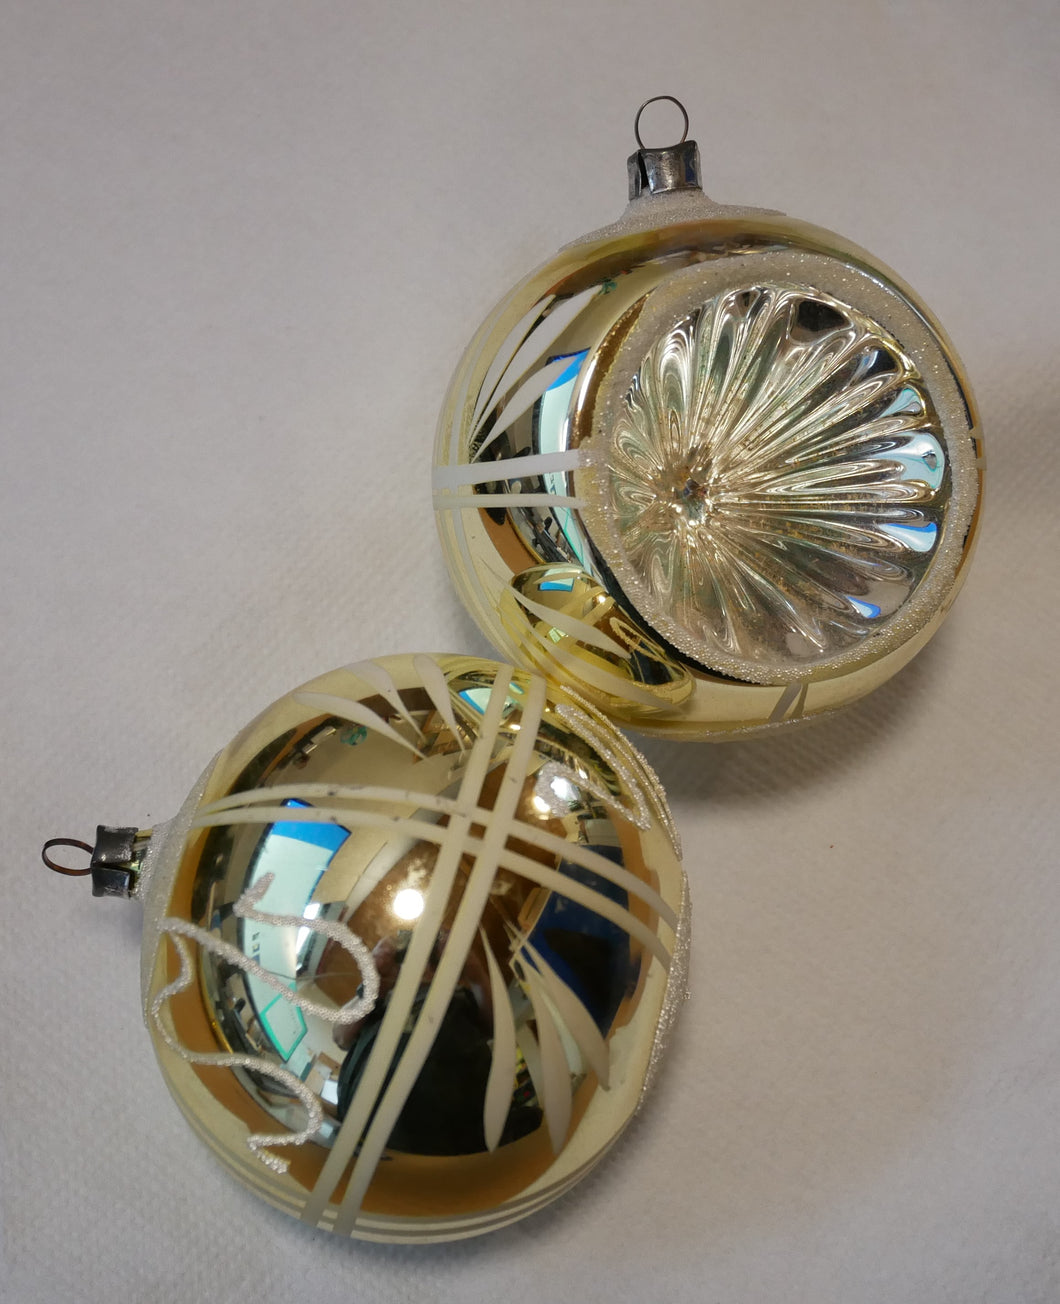 Gammel glaskugle reflektorer 4 - 6,5 cm med mønstre